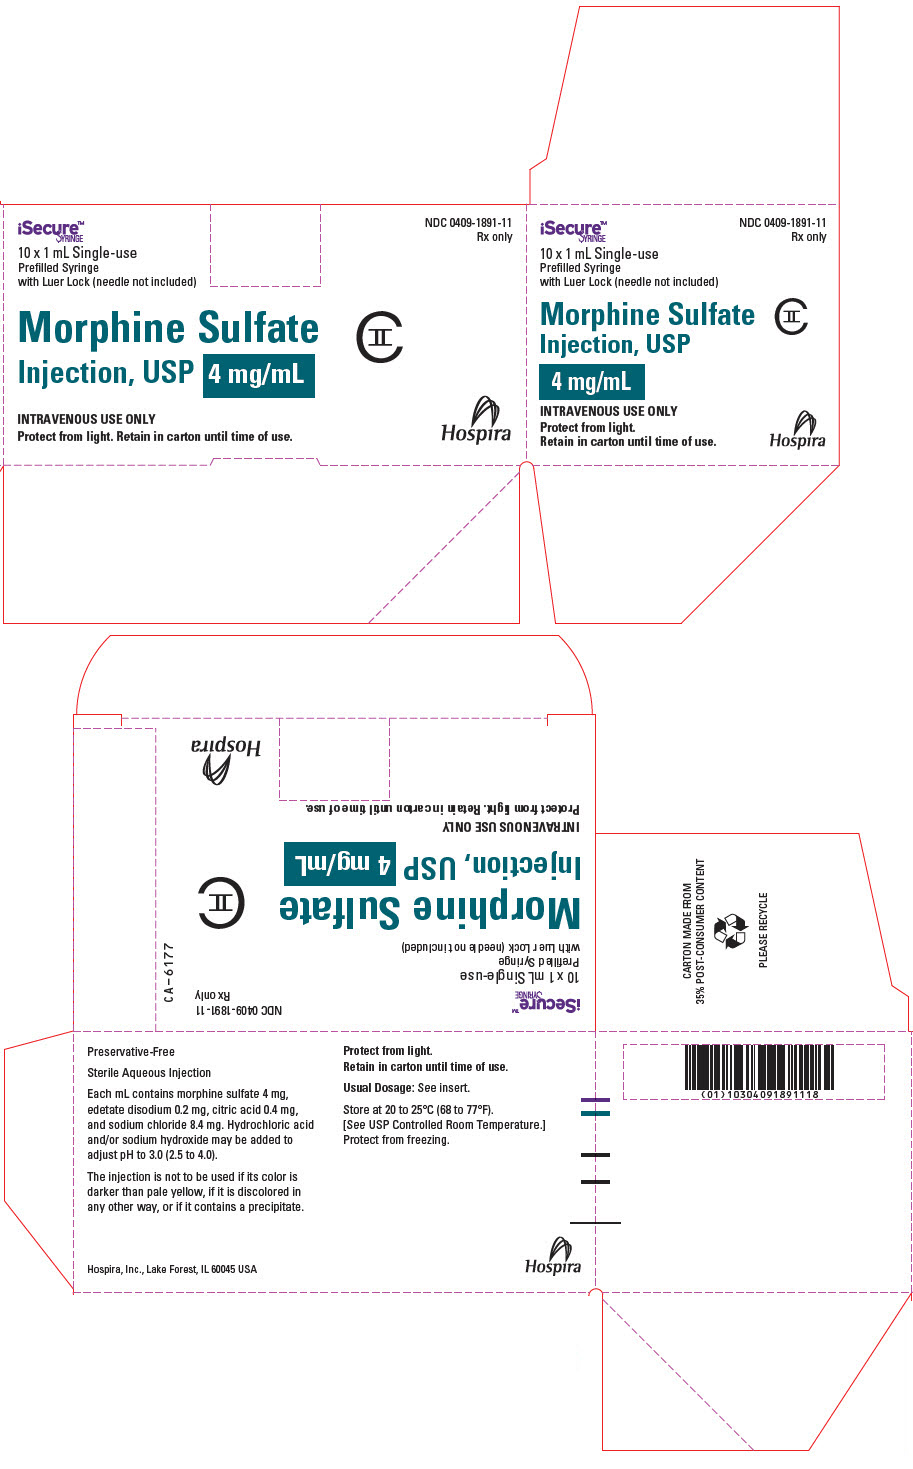 PRINCIPAL DISPLAY PANEL - 4 mg/mL Syringe Carton